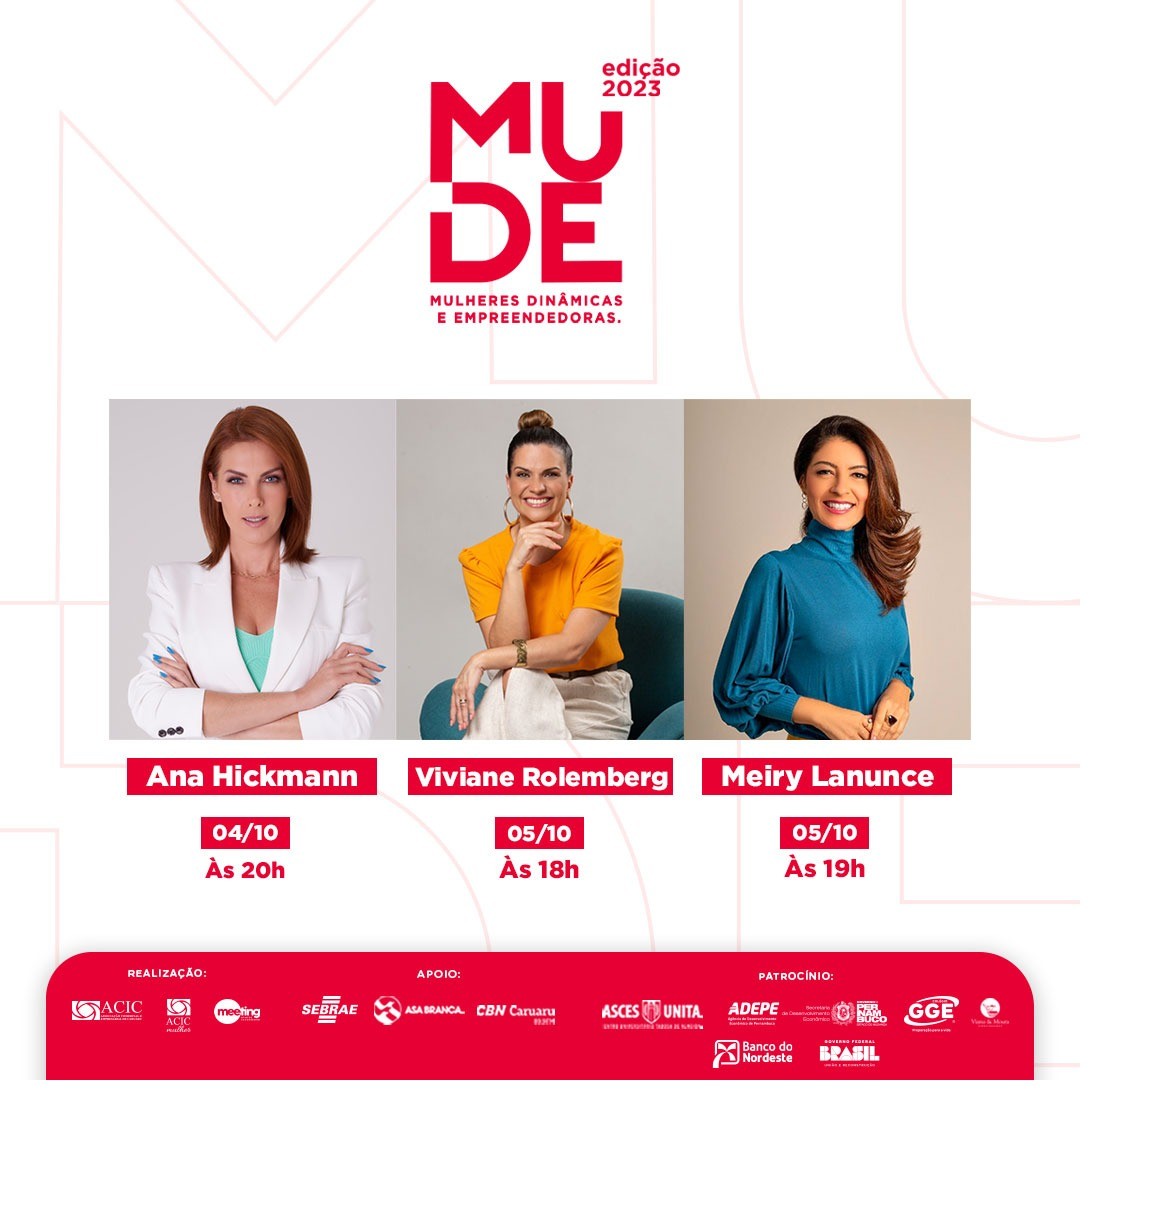 Mude 2023 recebe Ana Hickmann, Meiry Lanunce e Viviane Rolemberg em Caruaru